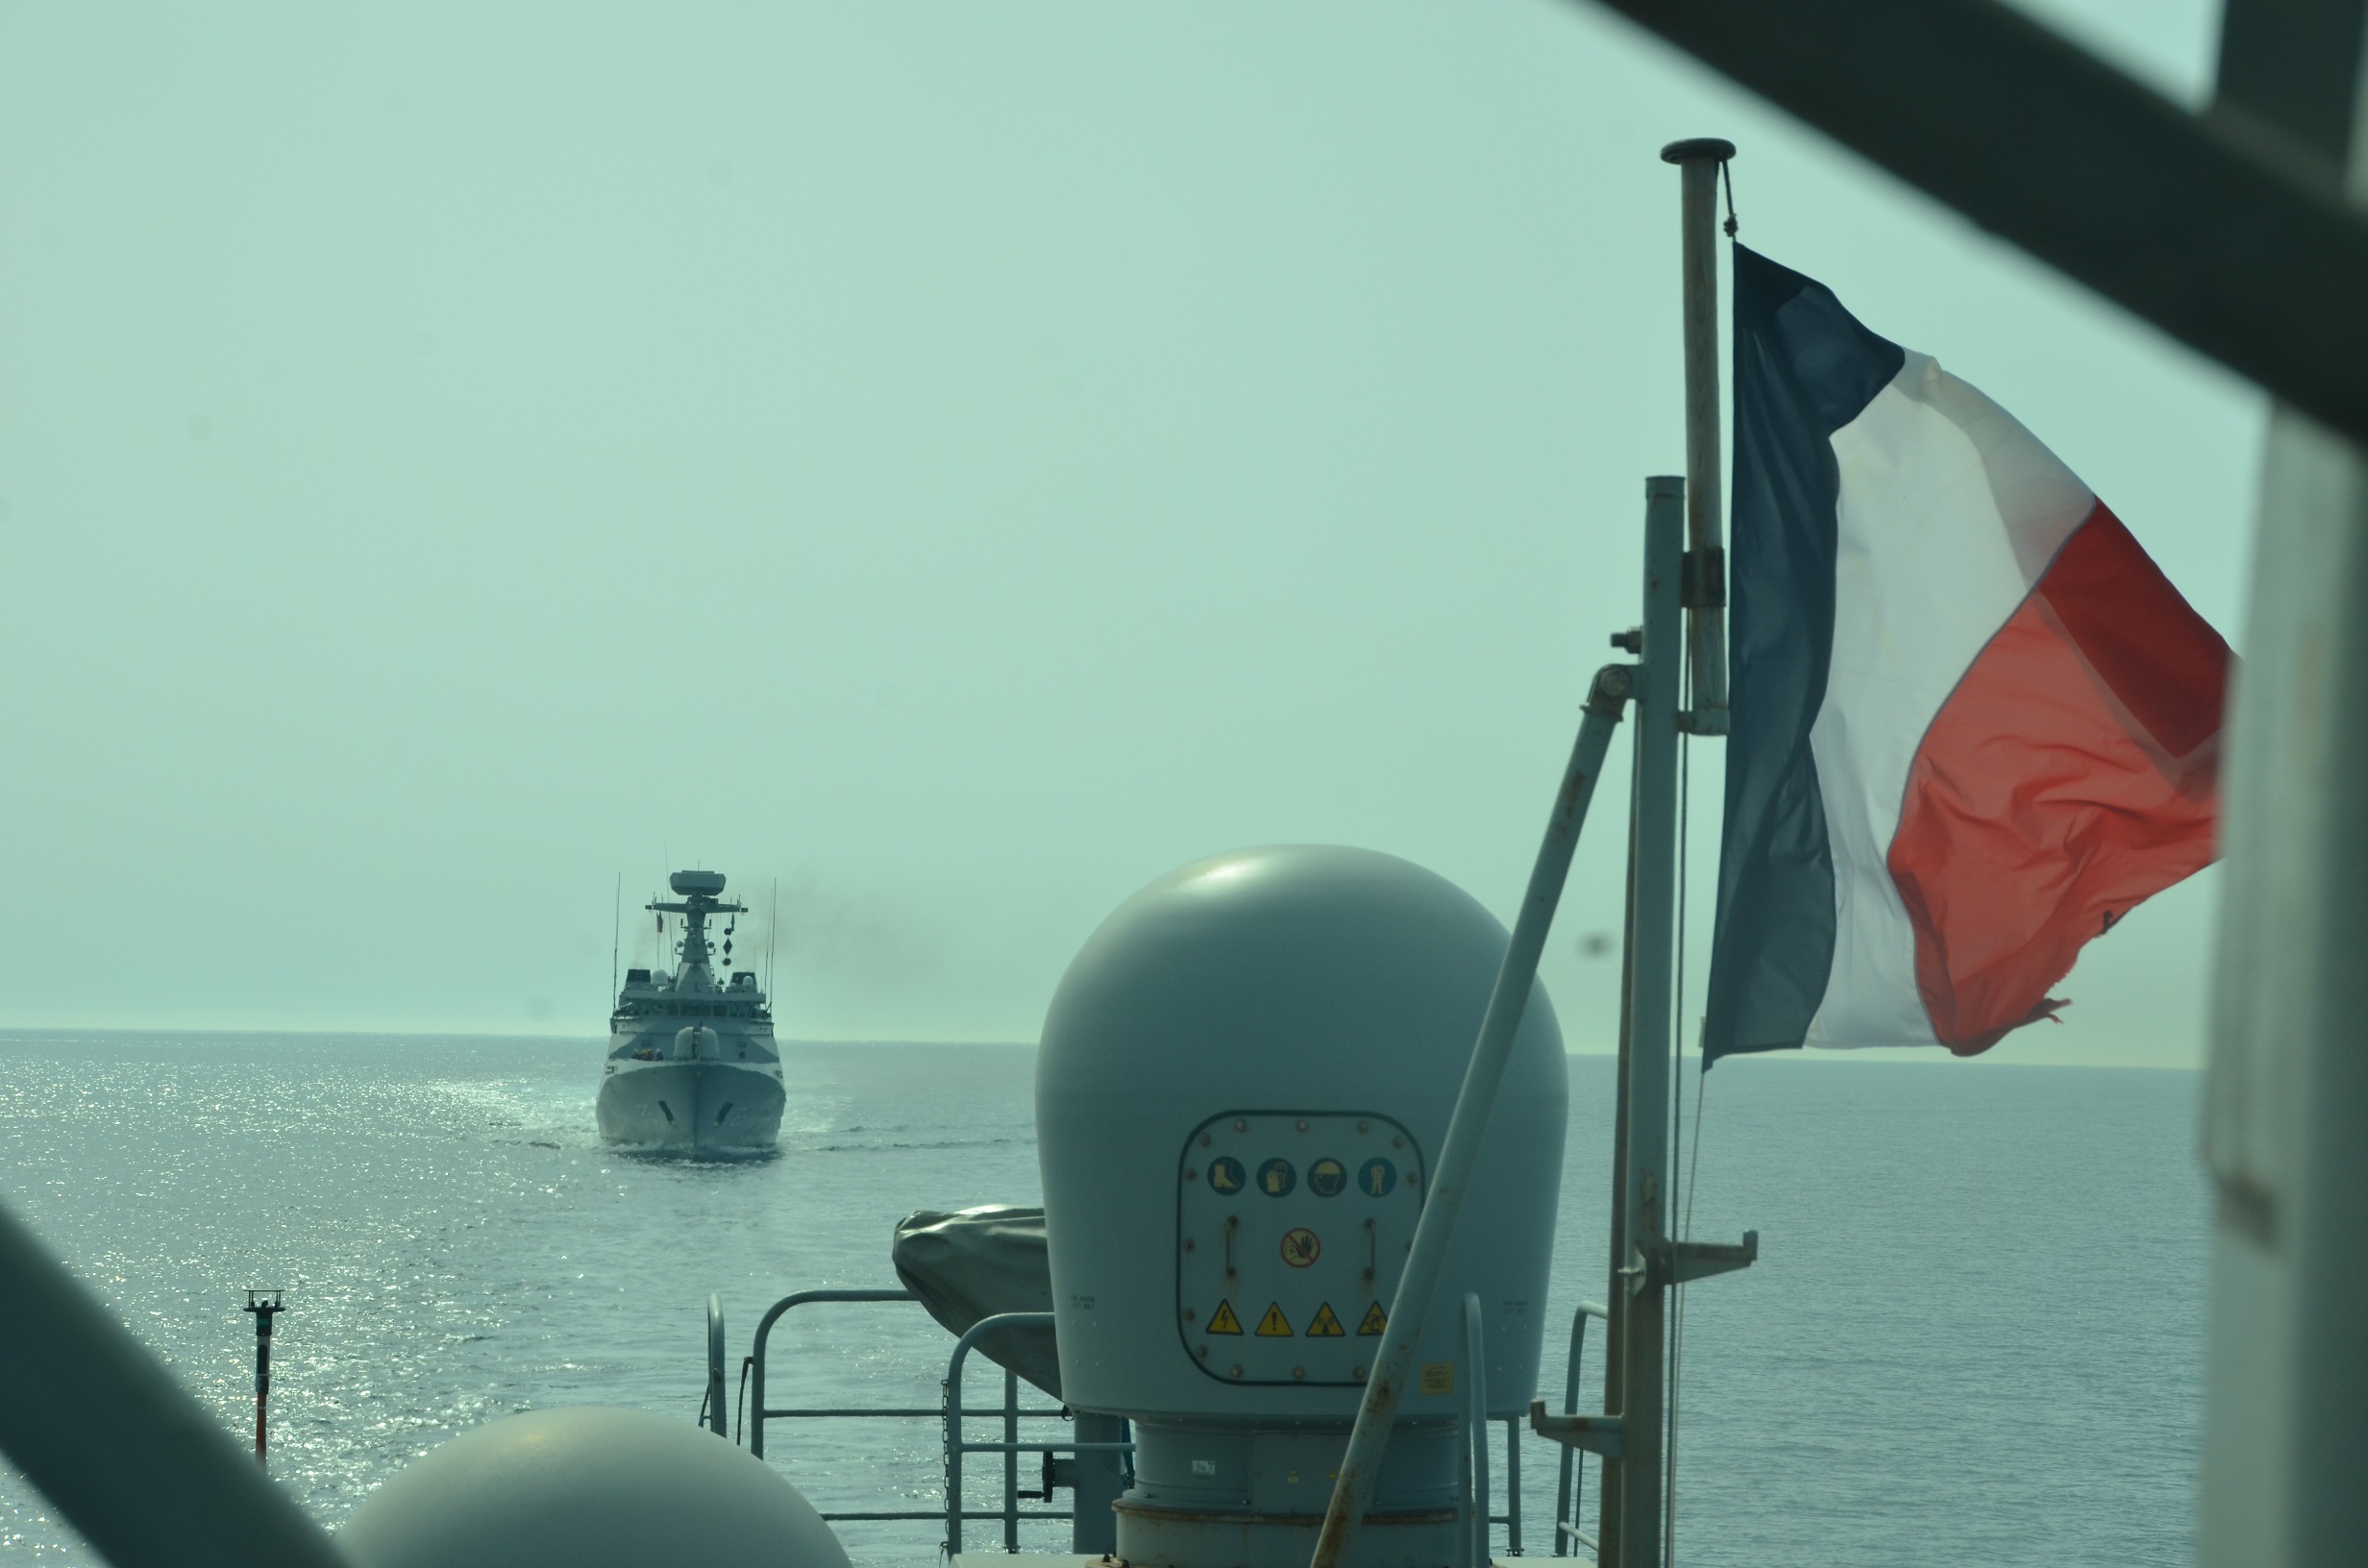 Méditerranée – Coopération entre la Marine Royale marocaine et la Marine nationale au large de Toulon